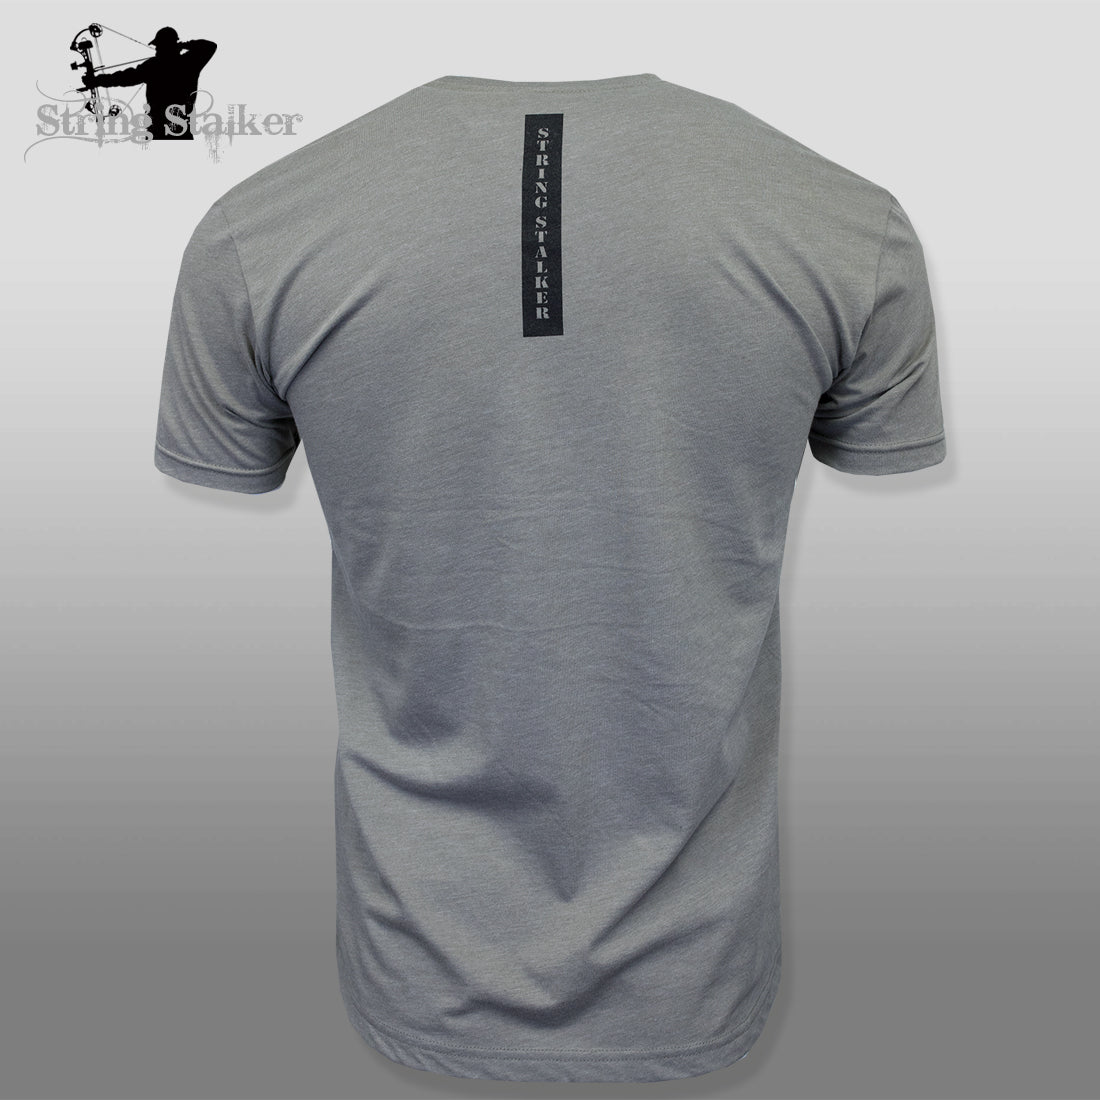 String Stalker Bow Hunting Distressed Site Logo Short Sleeve Super Soft T Shirt - Warm Gray - String Stalker